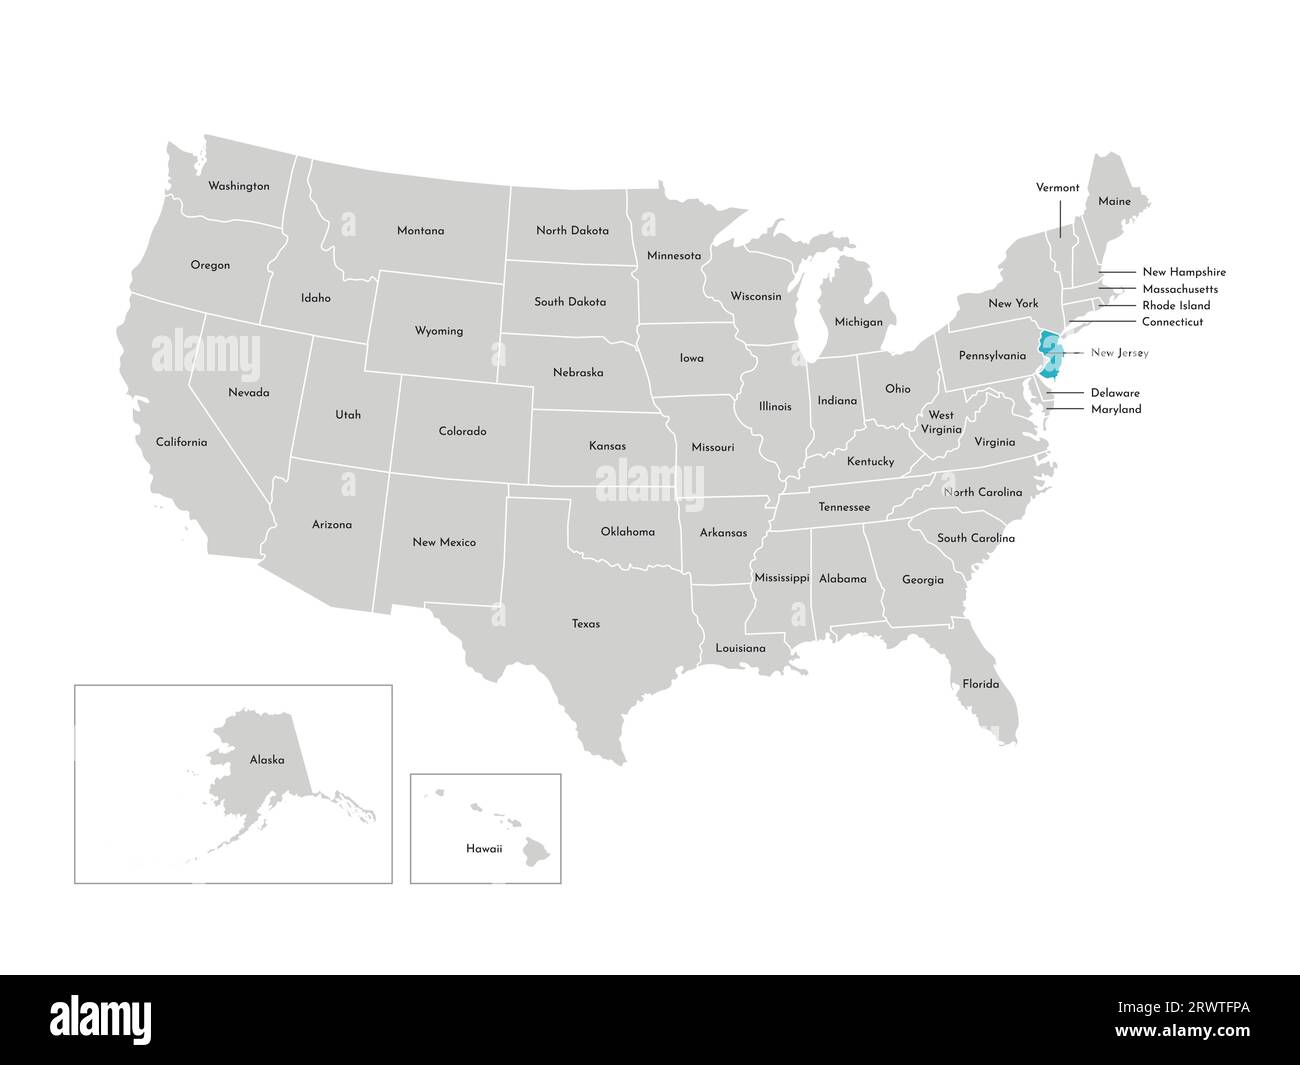 Vektor-isolierte Illustration einer vereinfachten Verwaltungskarte der USA. Grenzen der staaten mit Namen. Blaue Silhouette von New Jersey (Bundesstaat). Stock Vektor